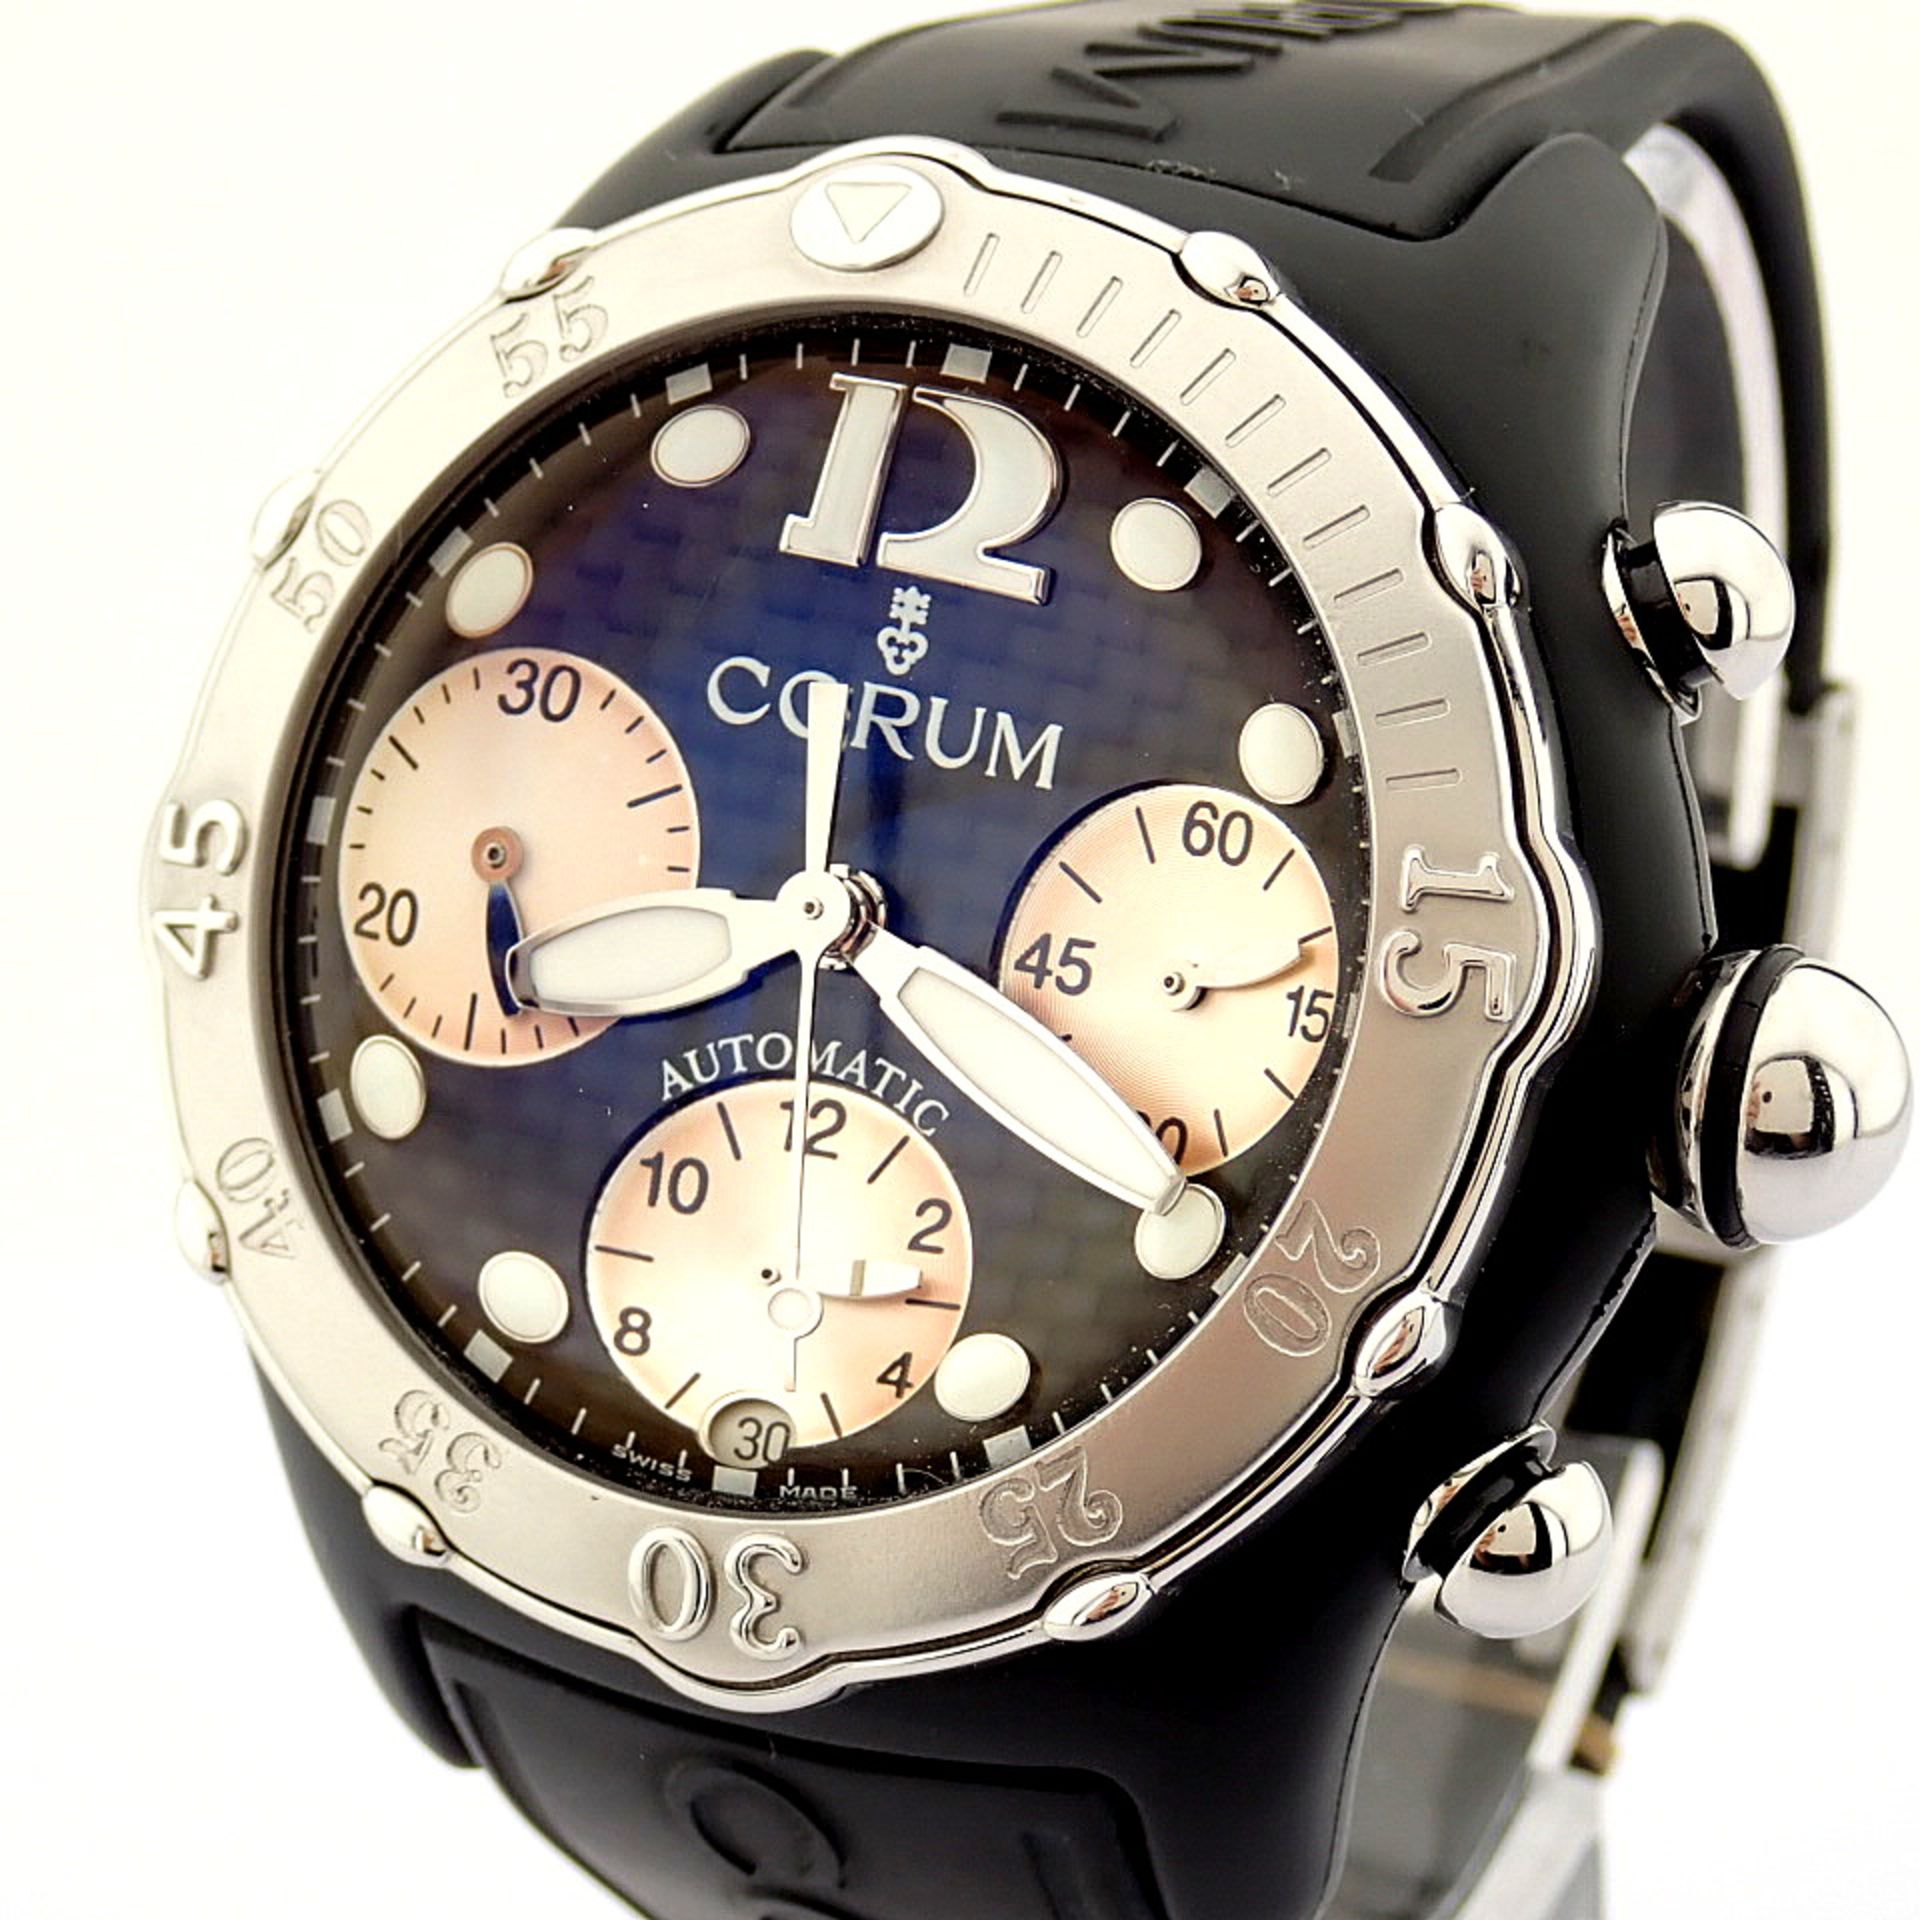 Corum / Midnight Chronograph Diver Taucher - Gentlmen's Steel Wrist Watch - Image 8 of 12